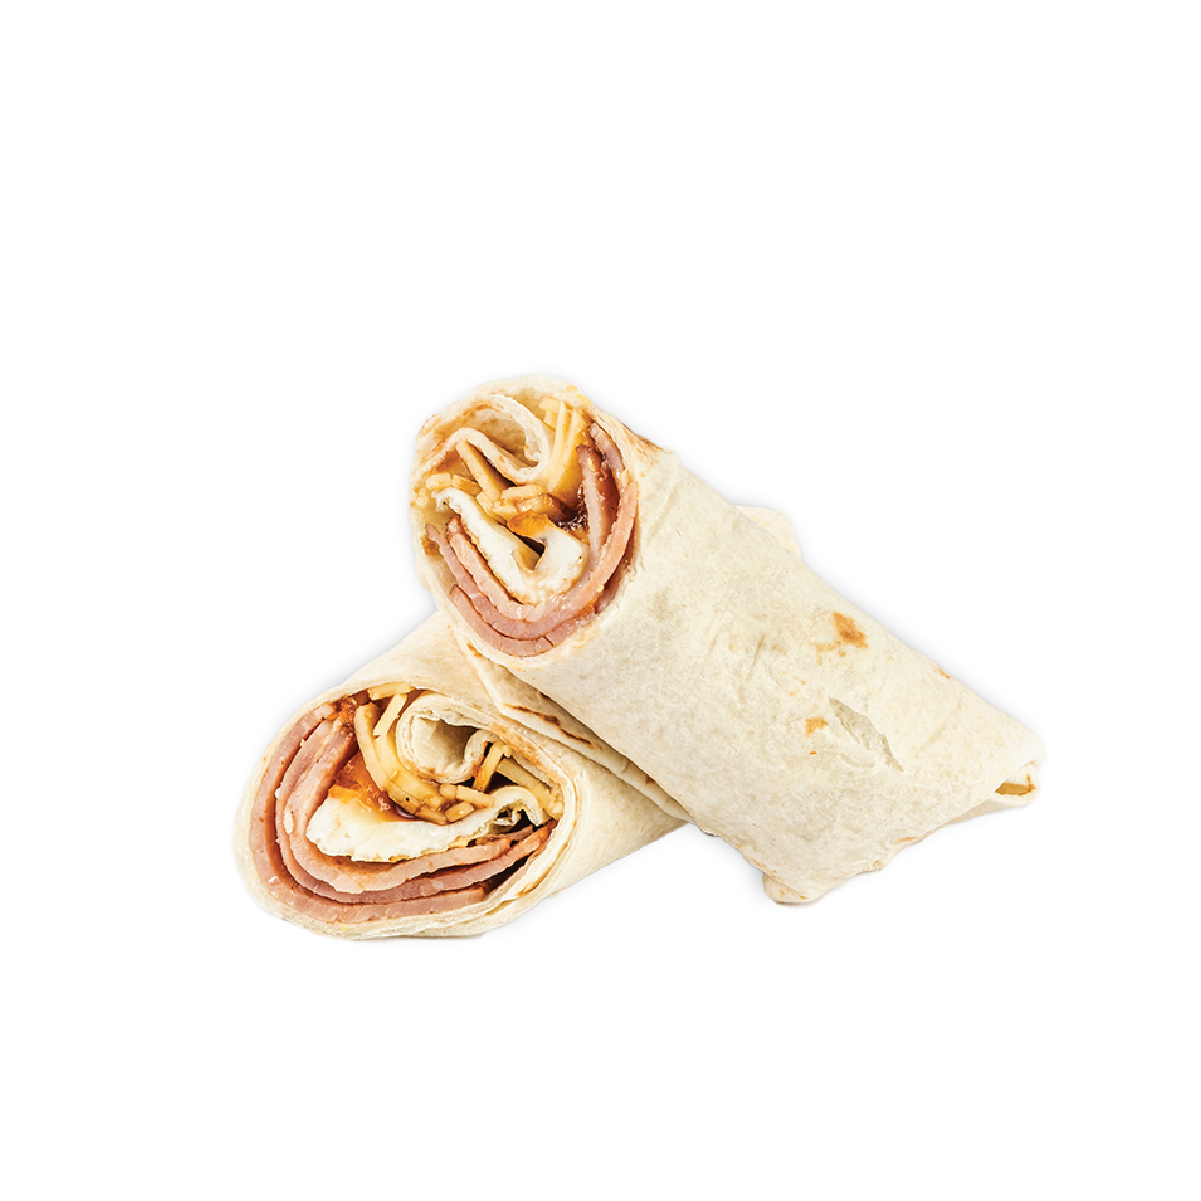 Bacon & Egg Wrap